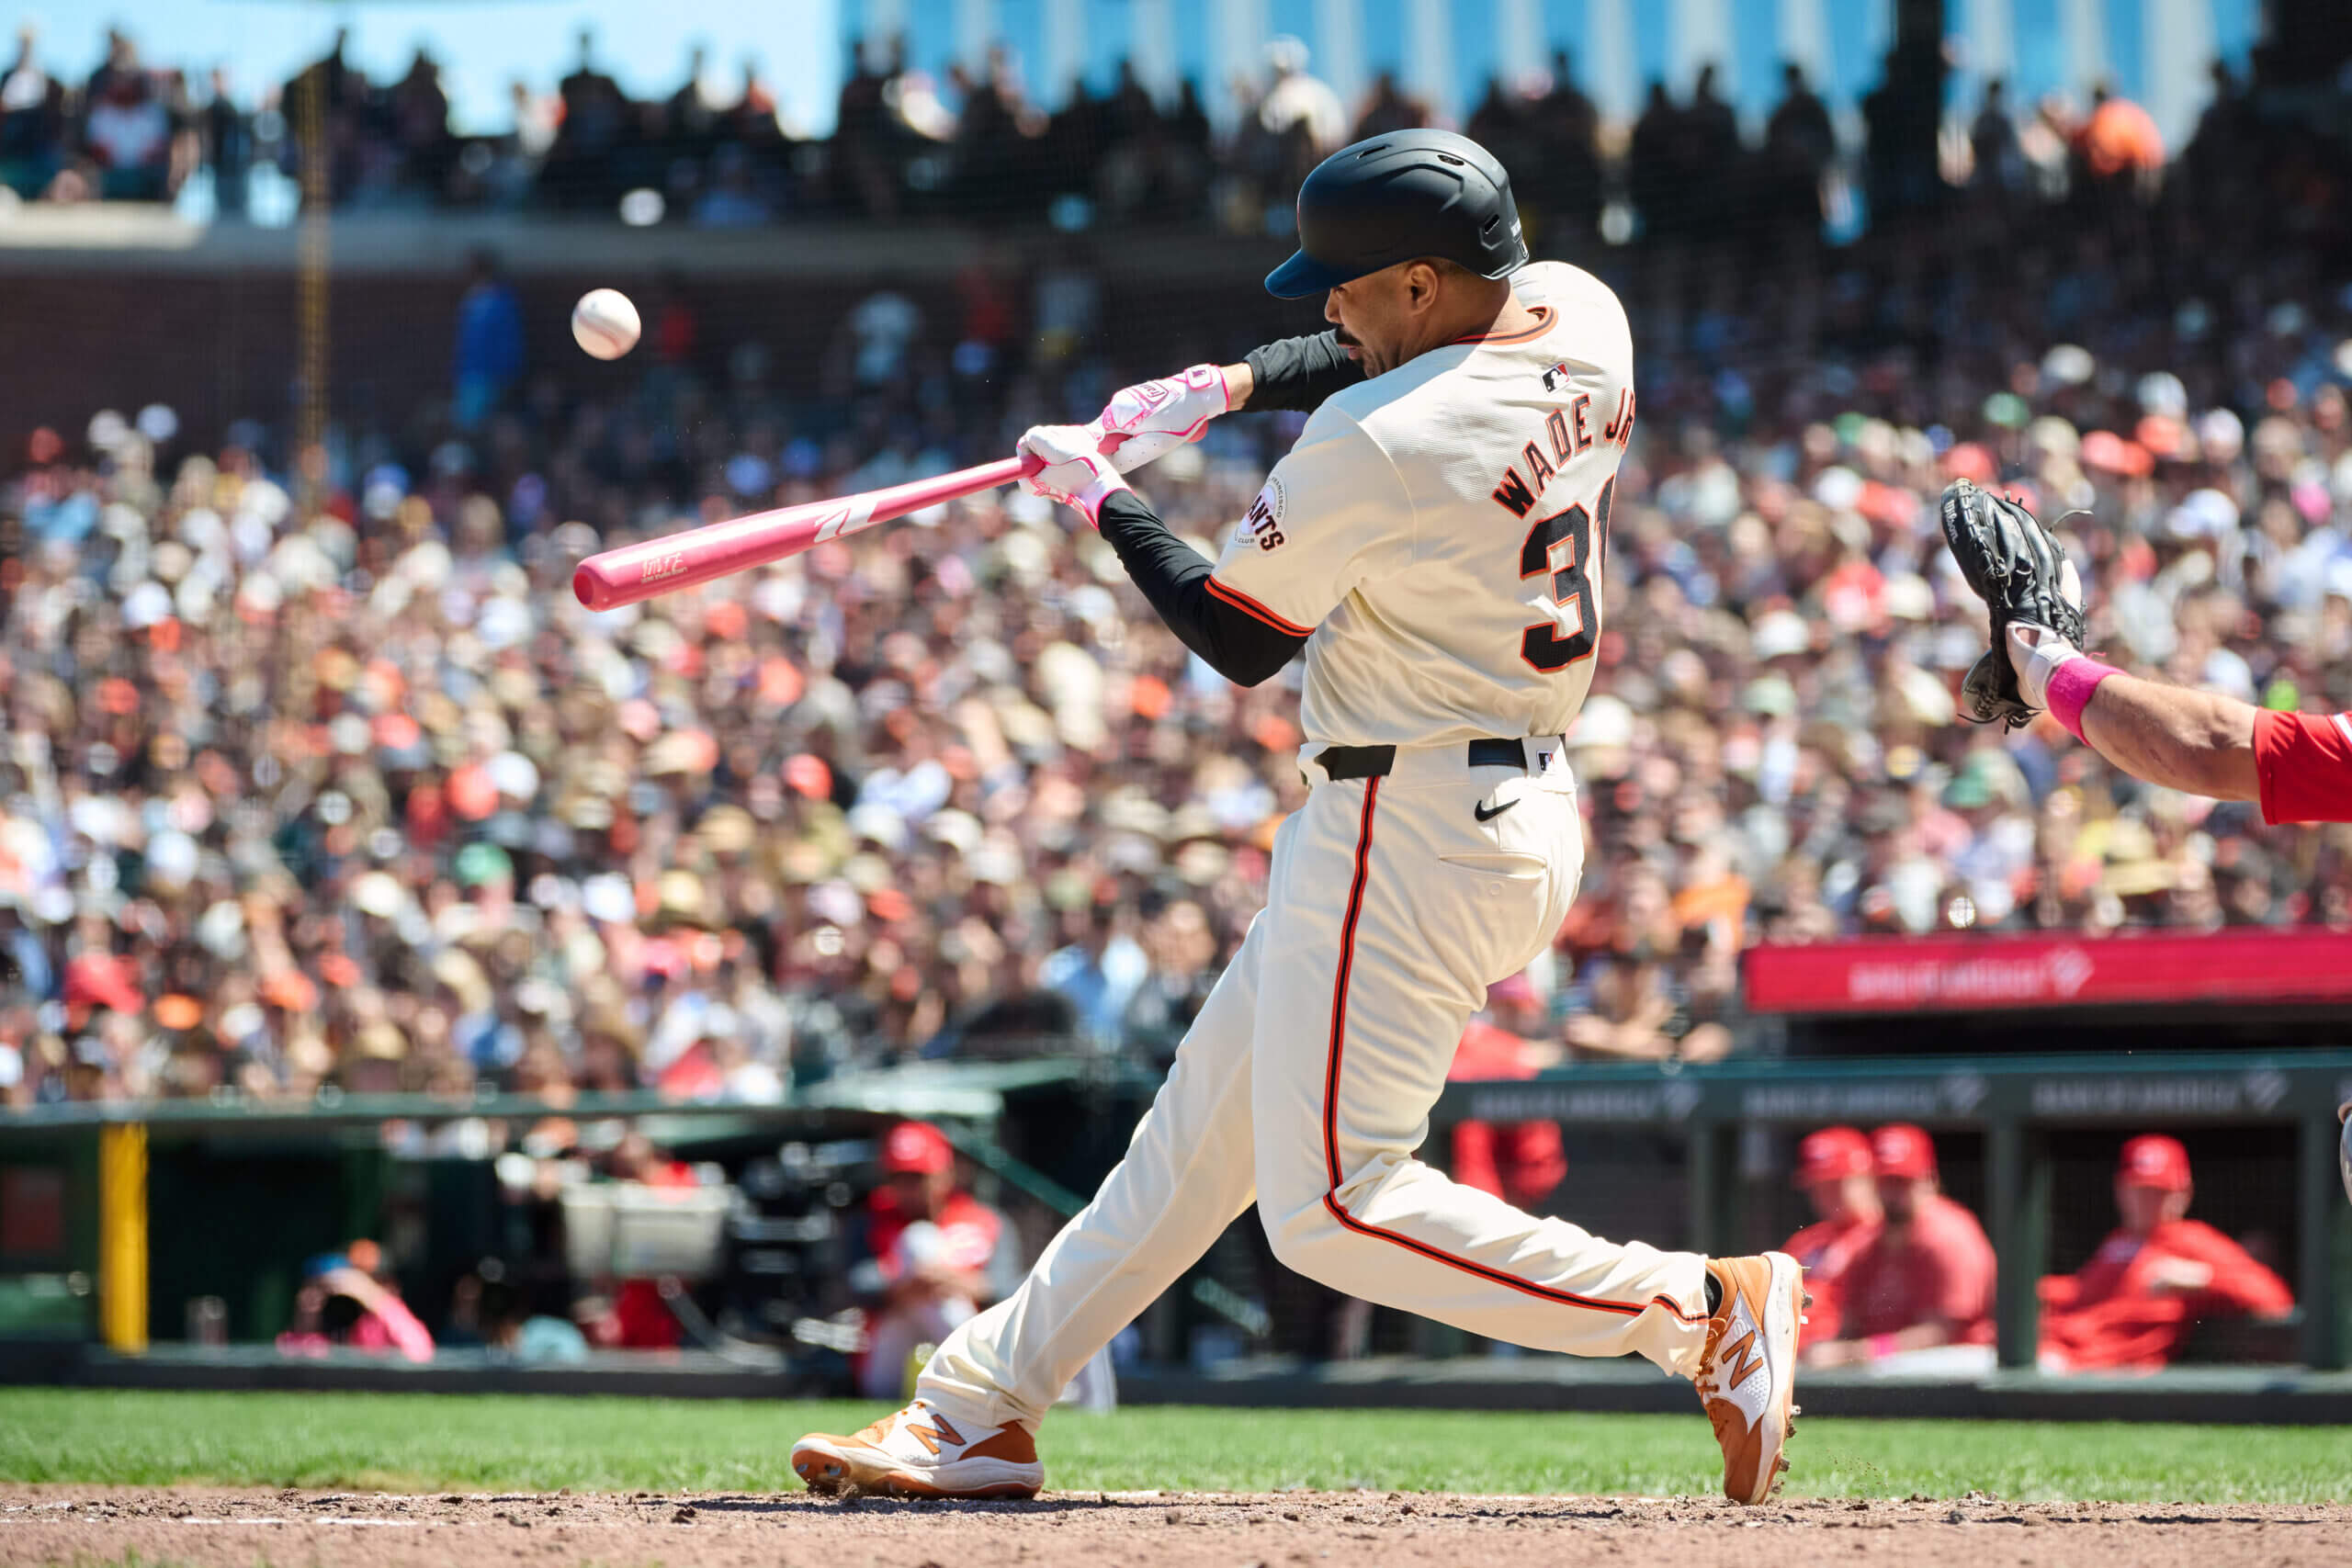 Why LaMonte Wade Jr. is an outlier: 3 takeaways on the Giants' bat speed